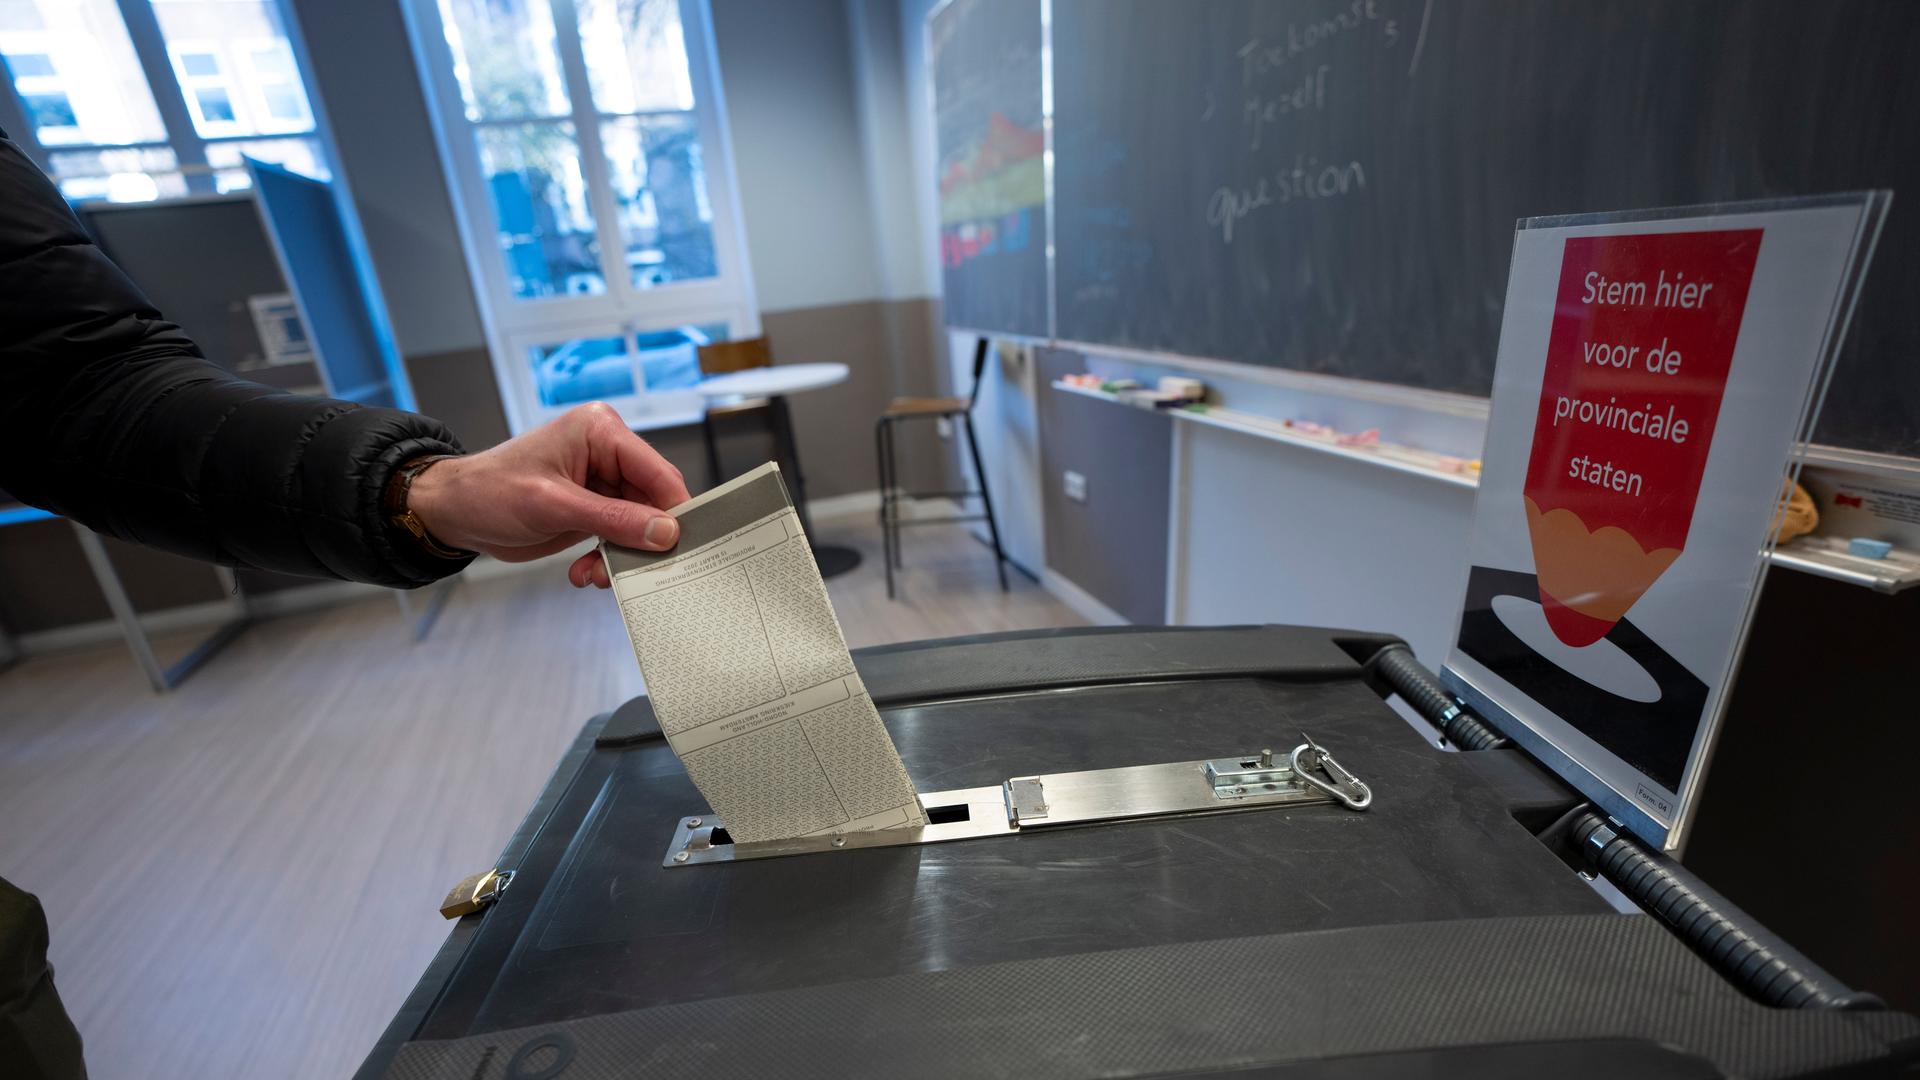 Ein Mann in den Niederlanden gibt seinen Stimmzettel für die Provinzwahlen ab.